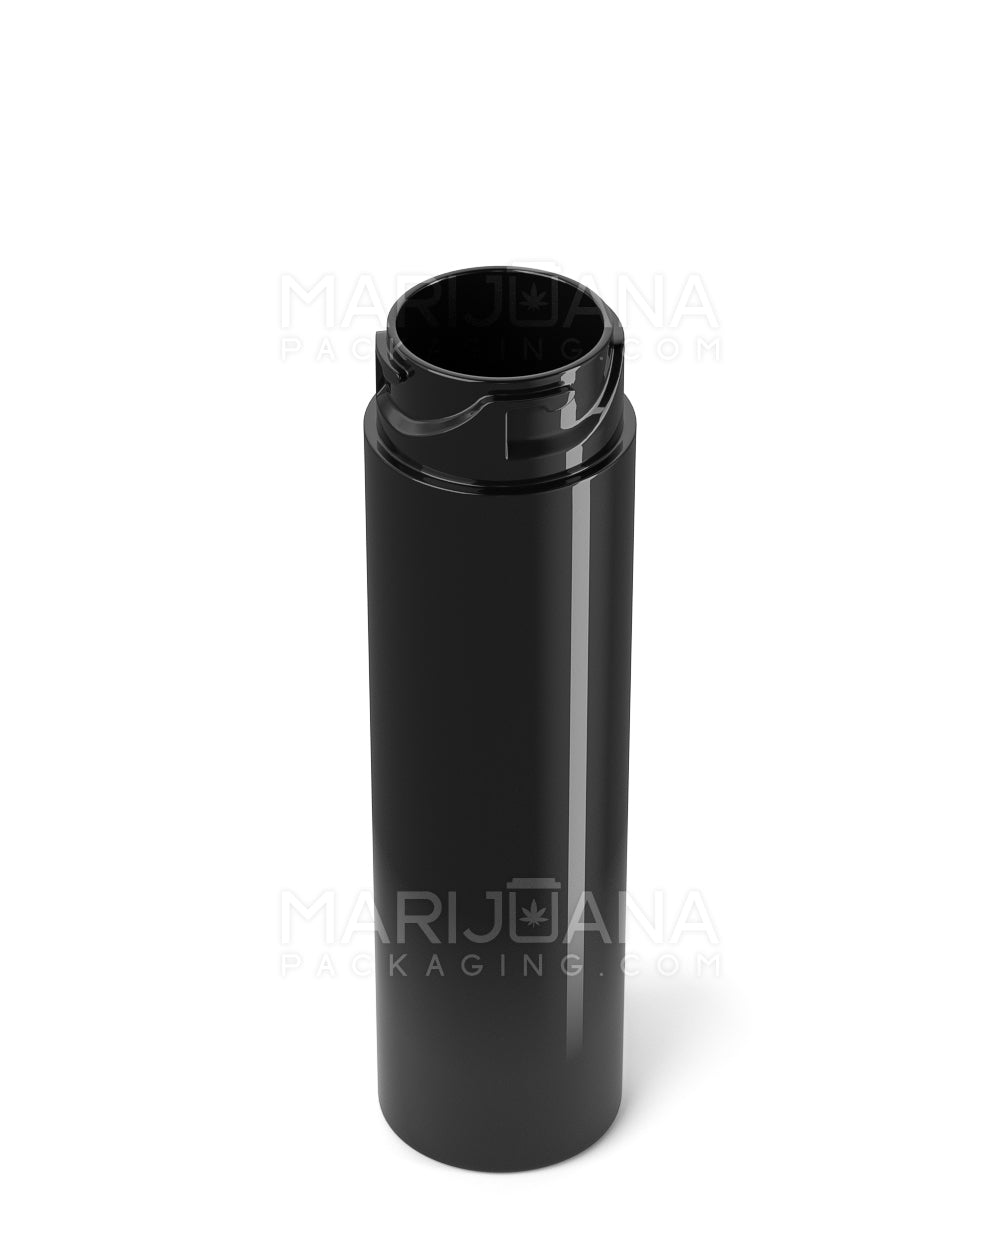 84mm Child Proof Black Plastic Dab Vape Tube w/ Black Cap